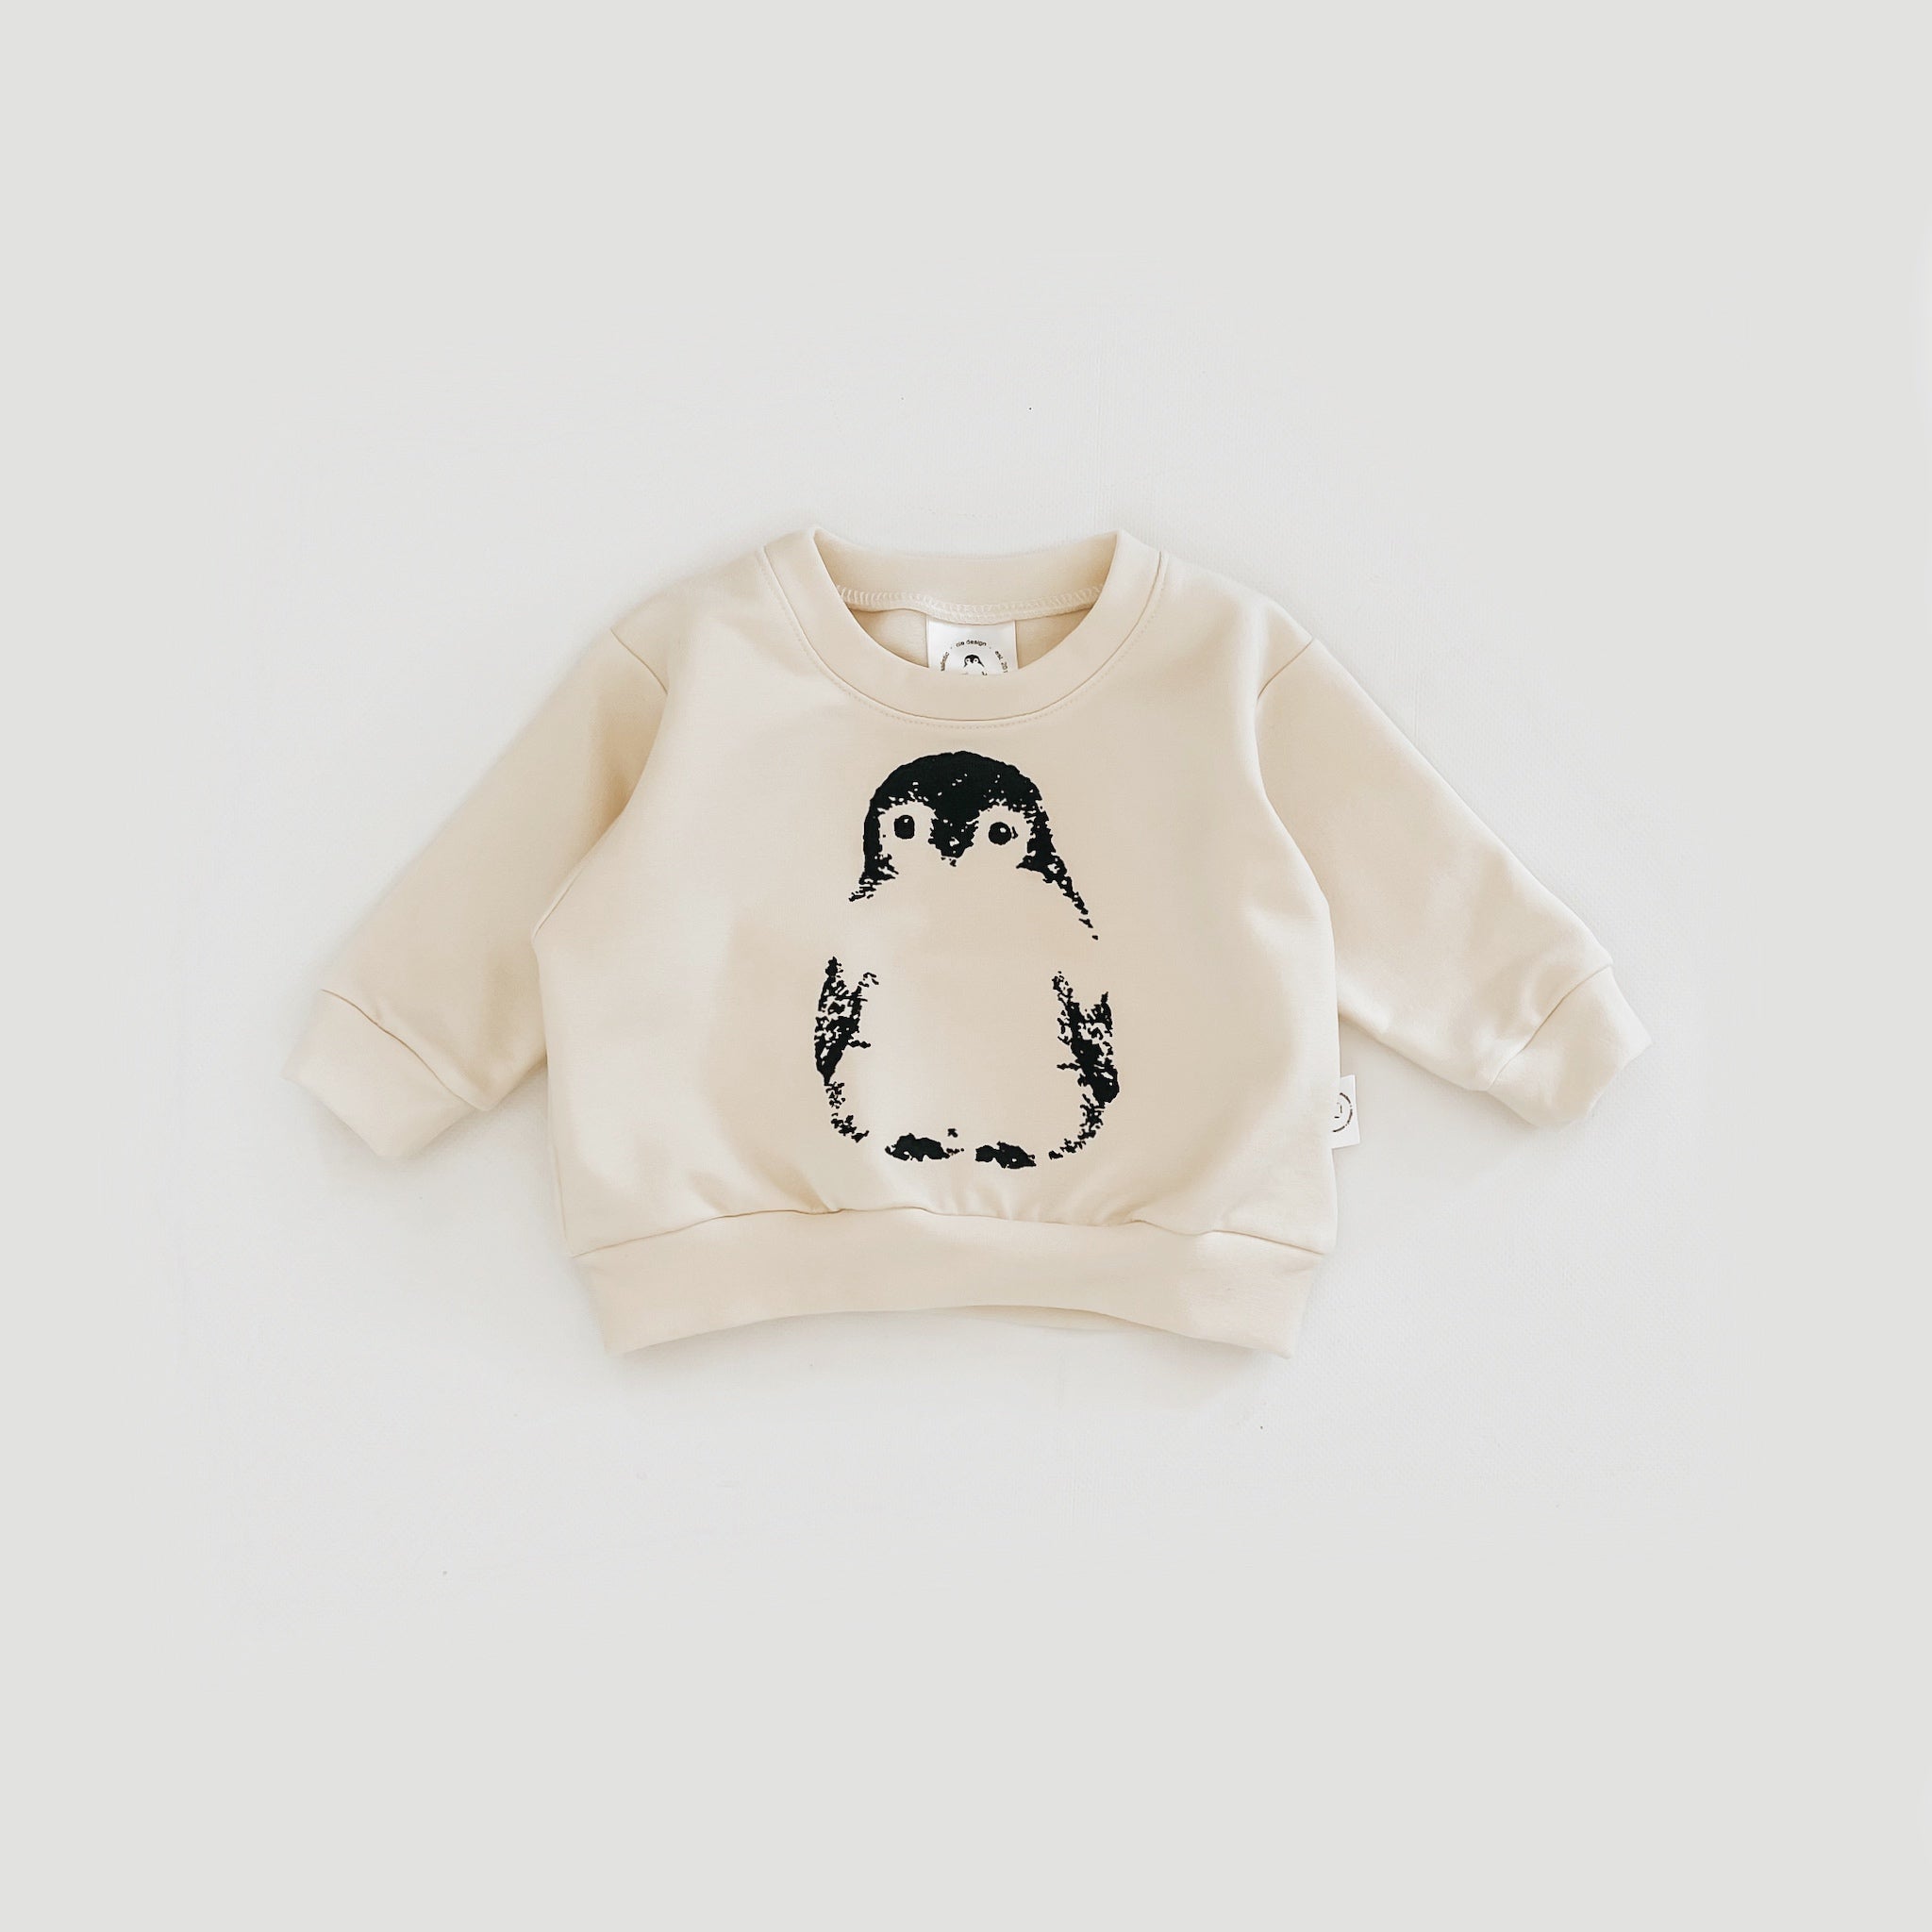 Oversized Signature Sweatshirt with Penguin